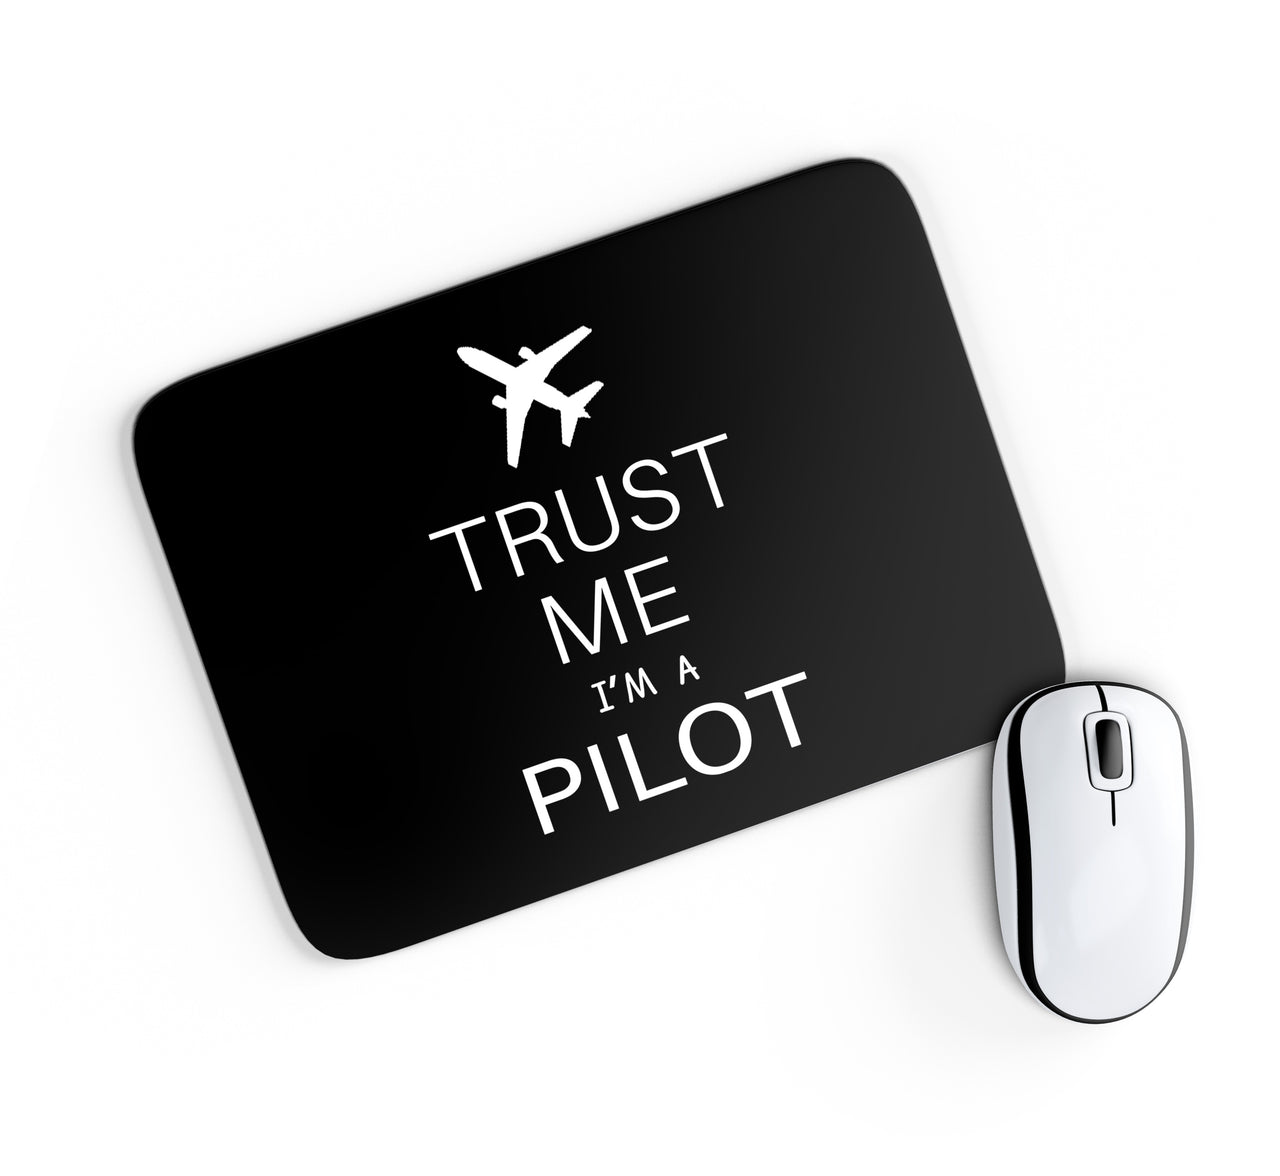 Trust Me I'm a Pilot 2 Designed Mouse Pads